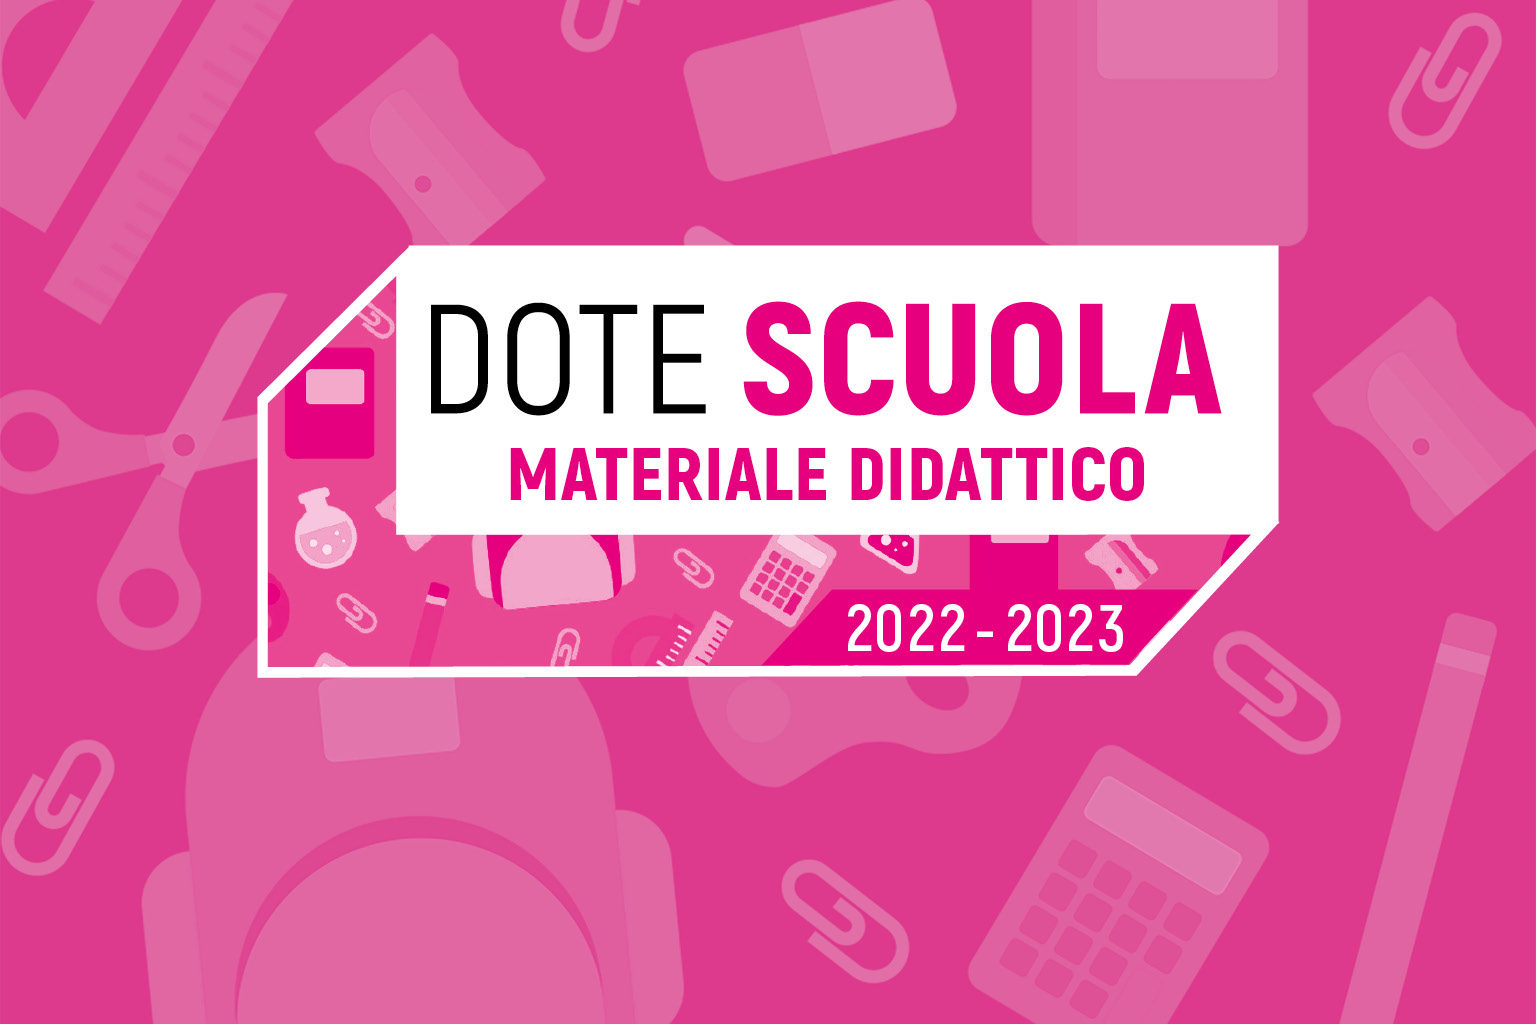 immagine Dote scuola 2022/2023 - Materiale didattico